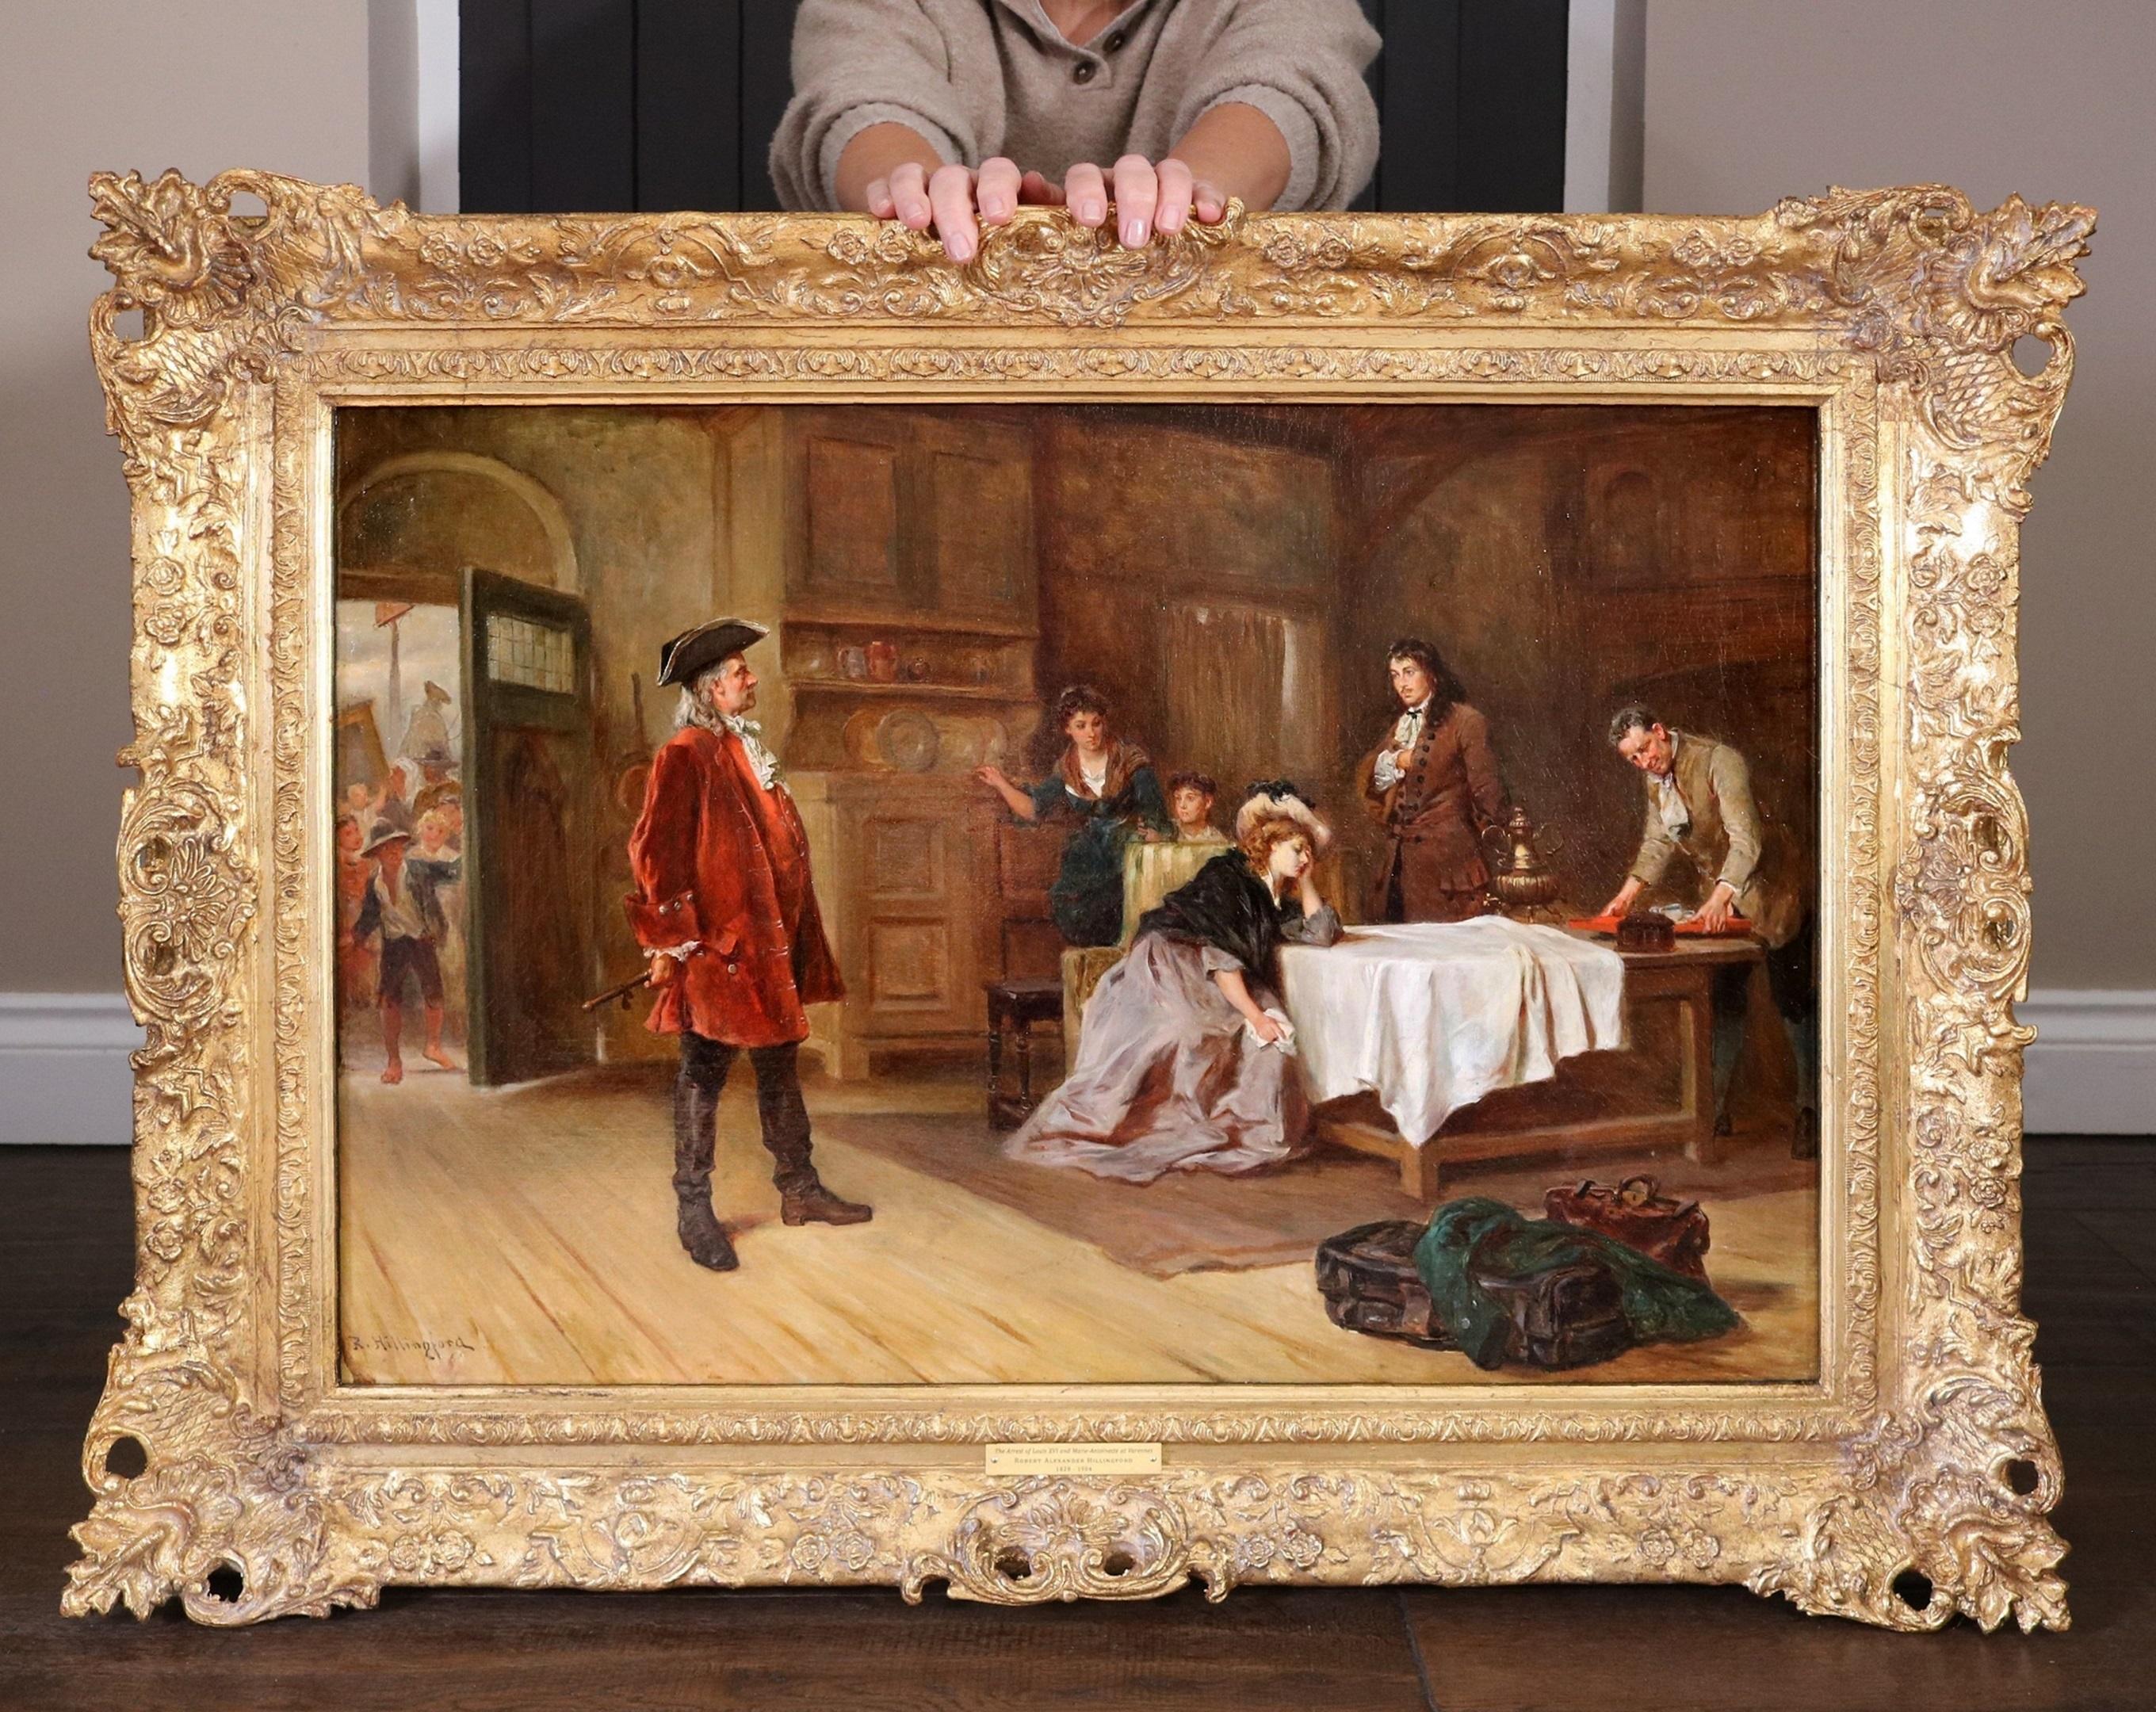 Landscape Painting Robert Alexander Hillingford - Louis XVI et Marie Antoinette - Peinture à l'huile de la Révolution française du 19e siècle